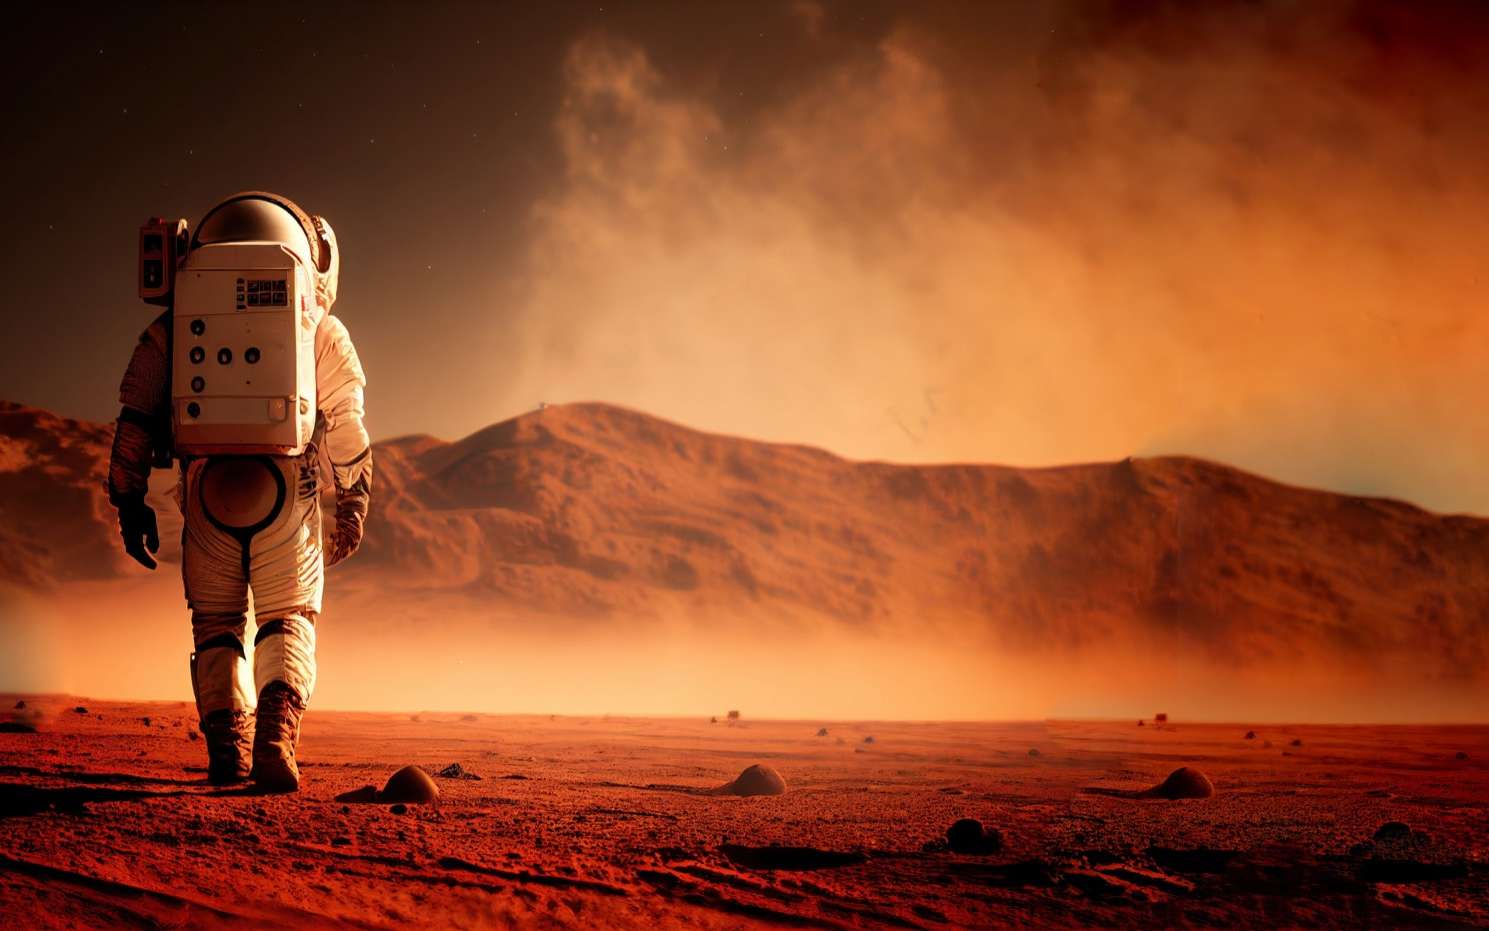 Un voyage vers Mars serait désastreux pour les astronautes